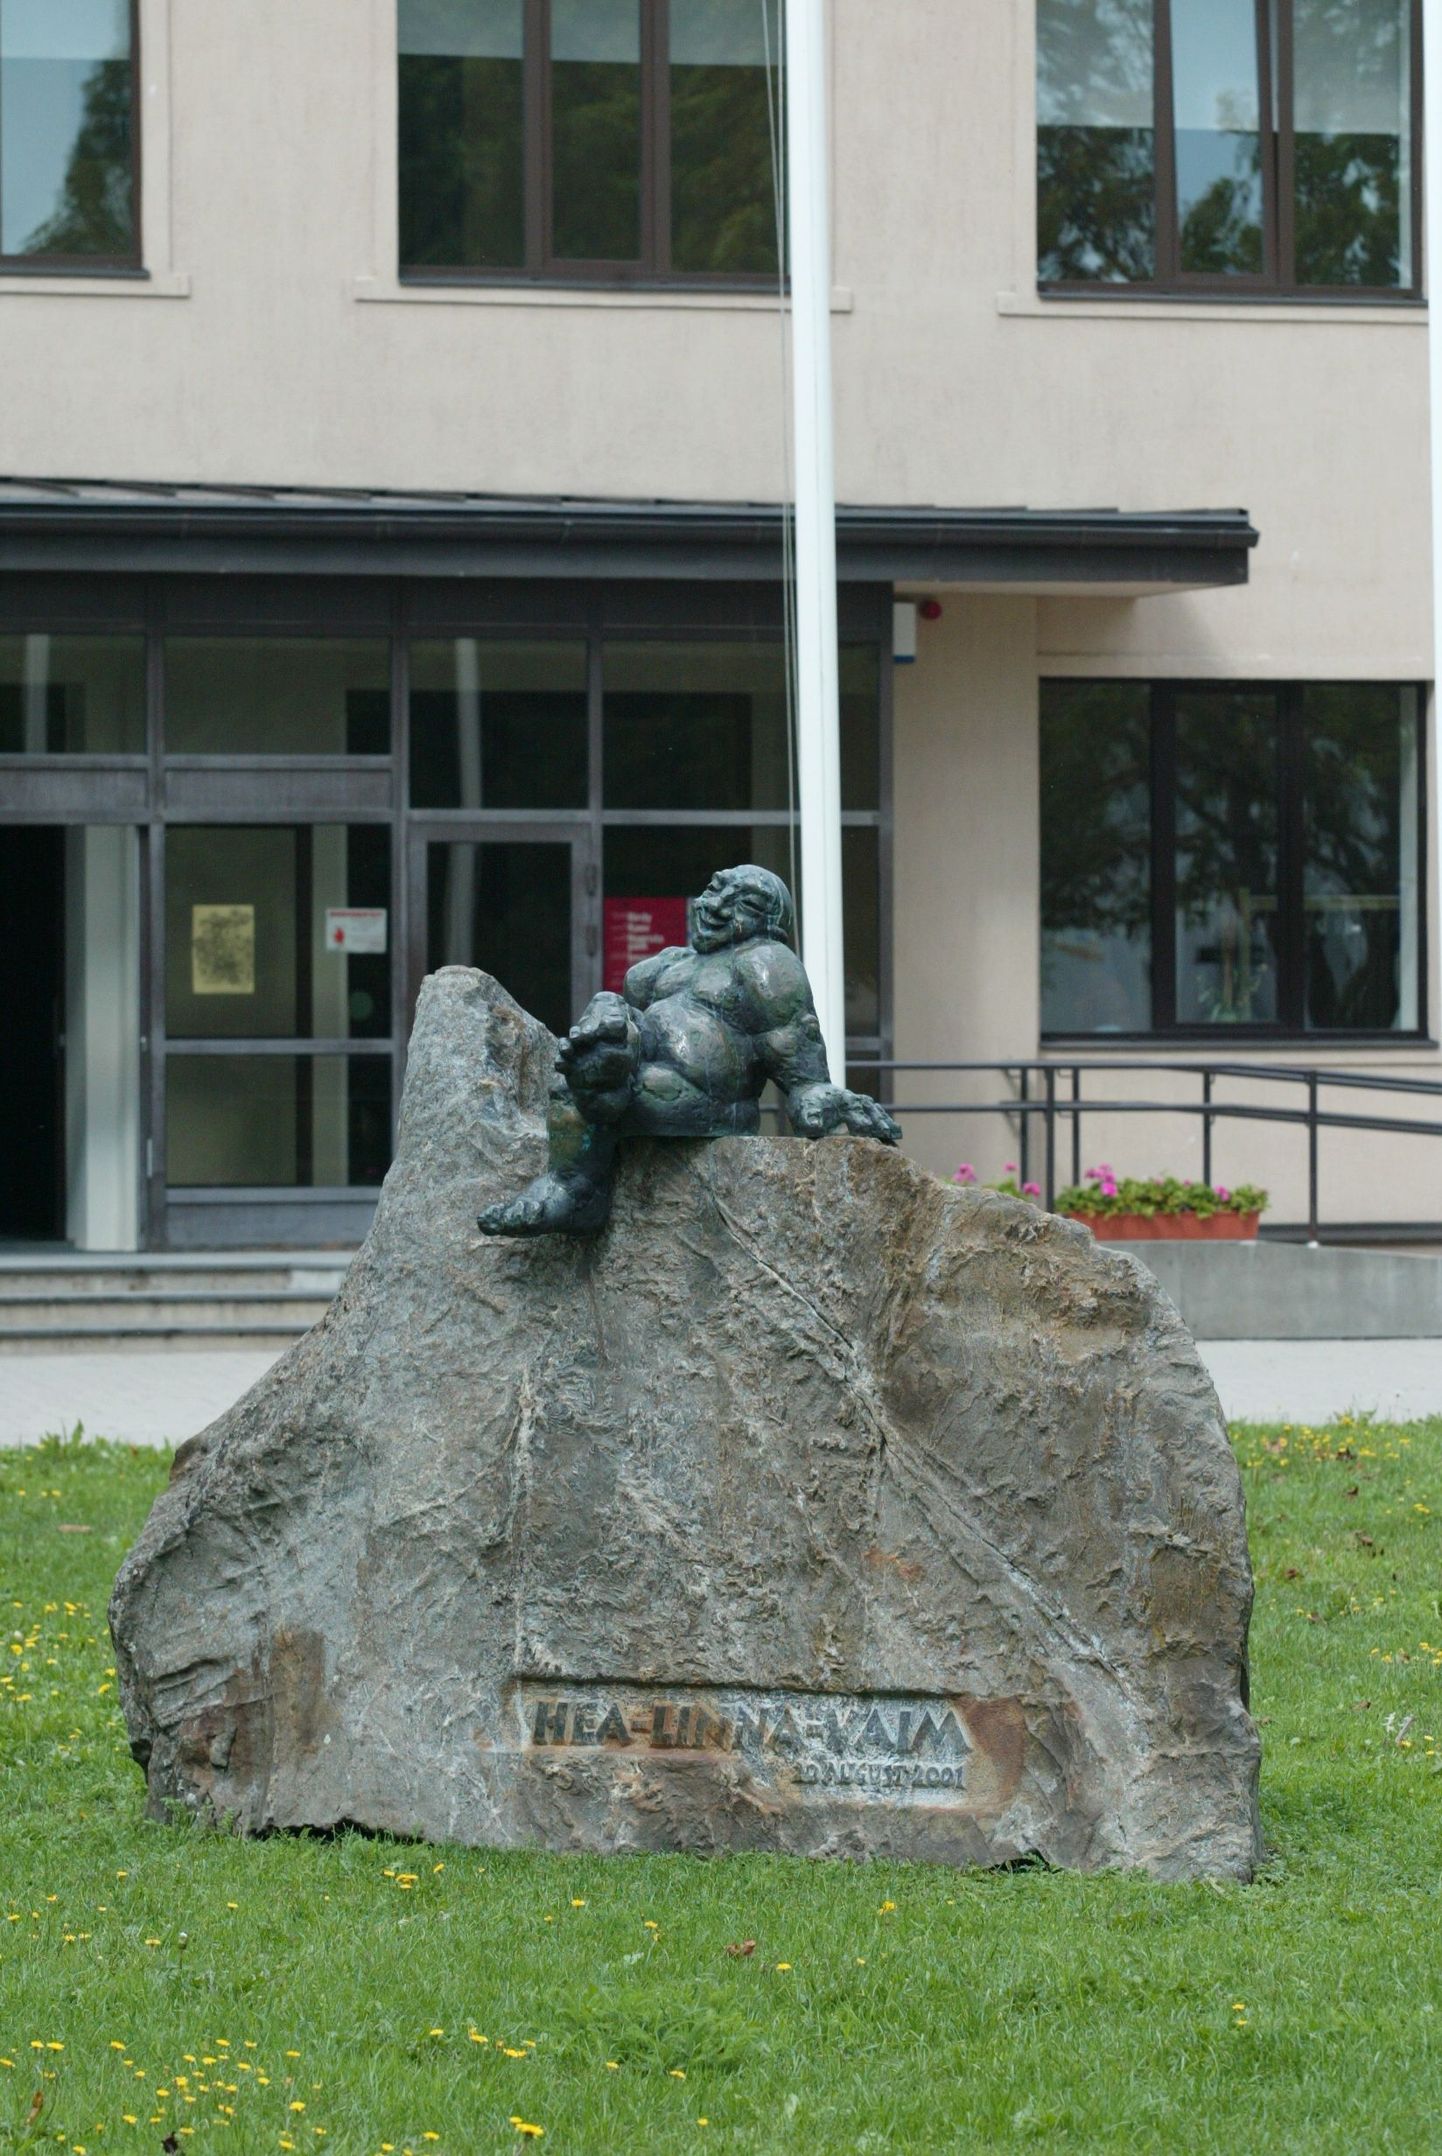 Pildil Jõgeva kultuurimaja ees asuv Tauno Kangro skulptuur «Hea Linna Vaim».